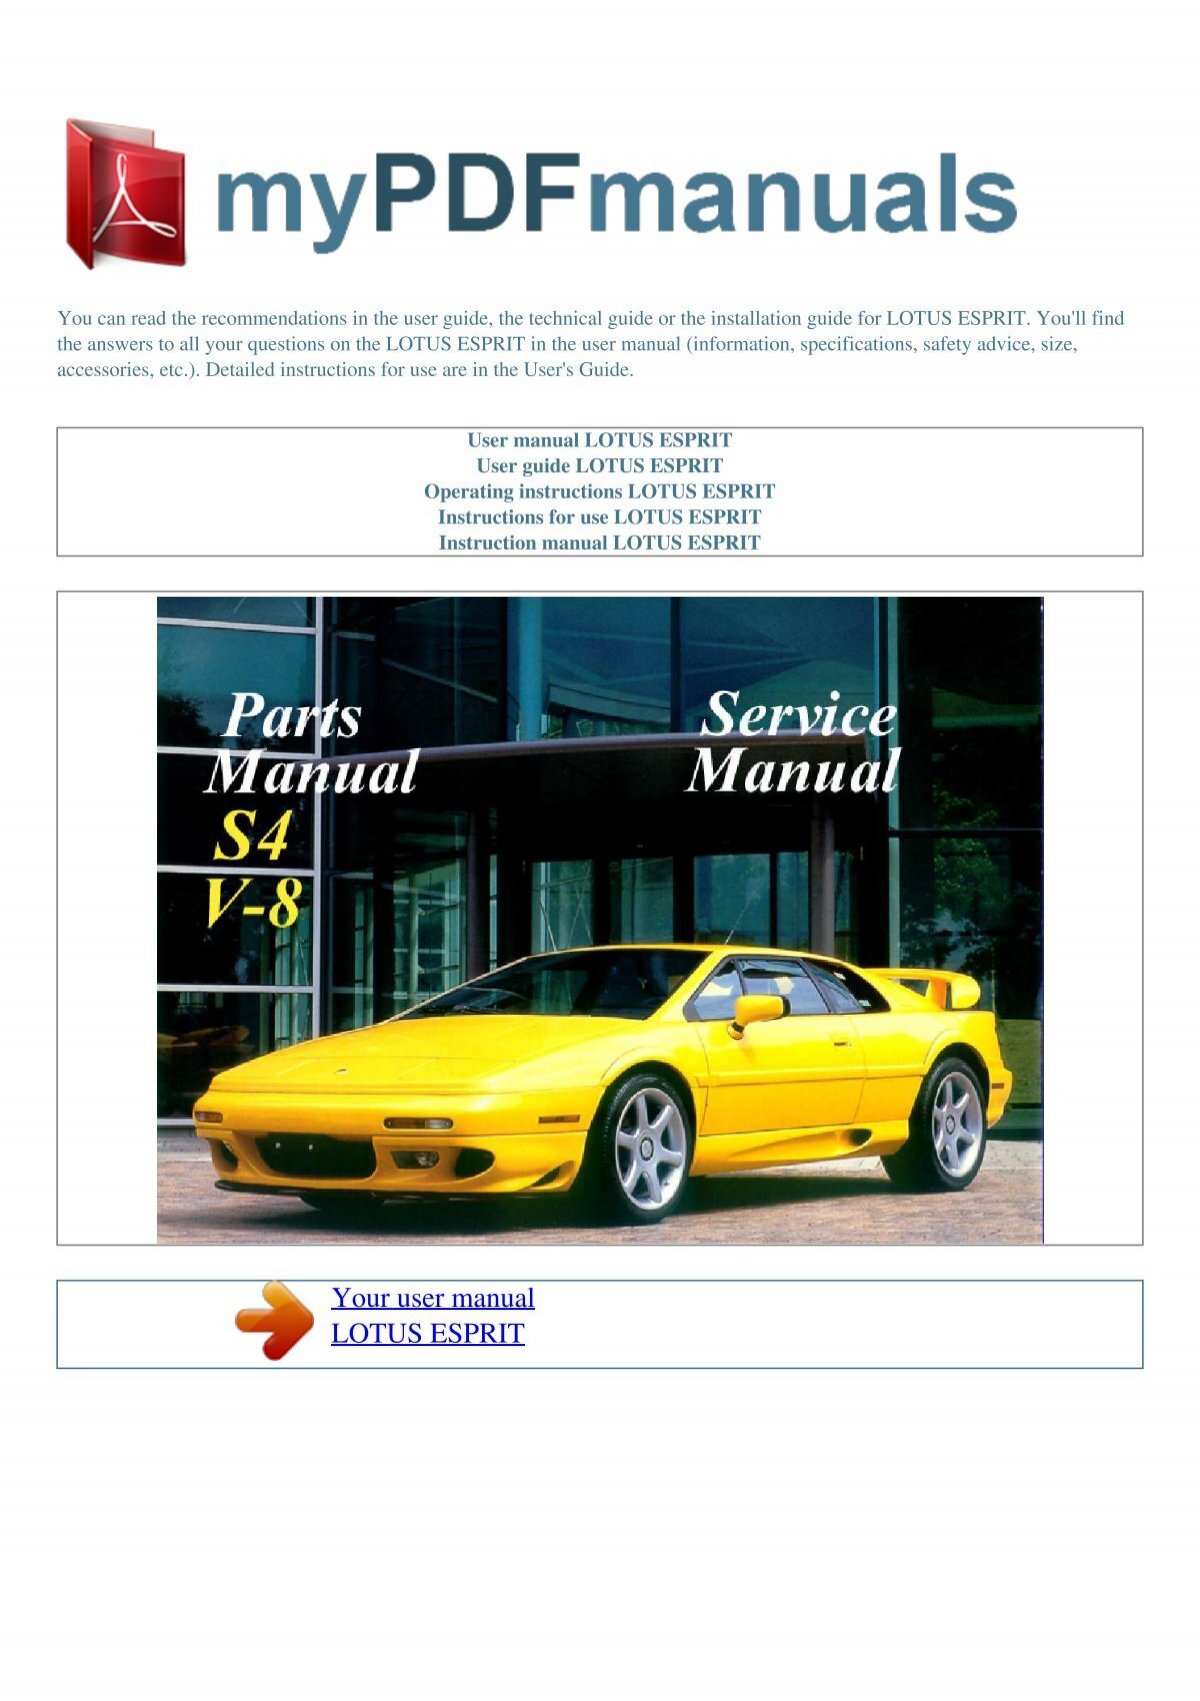 User manual LOTUS ESPRIT - MY PDF MANUALS